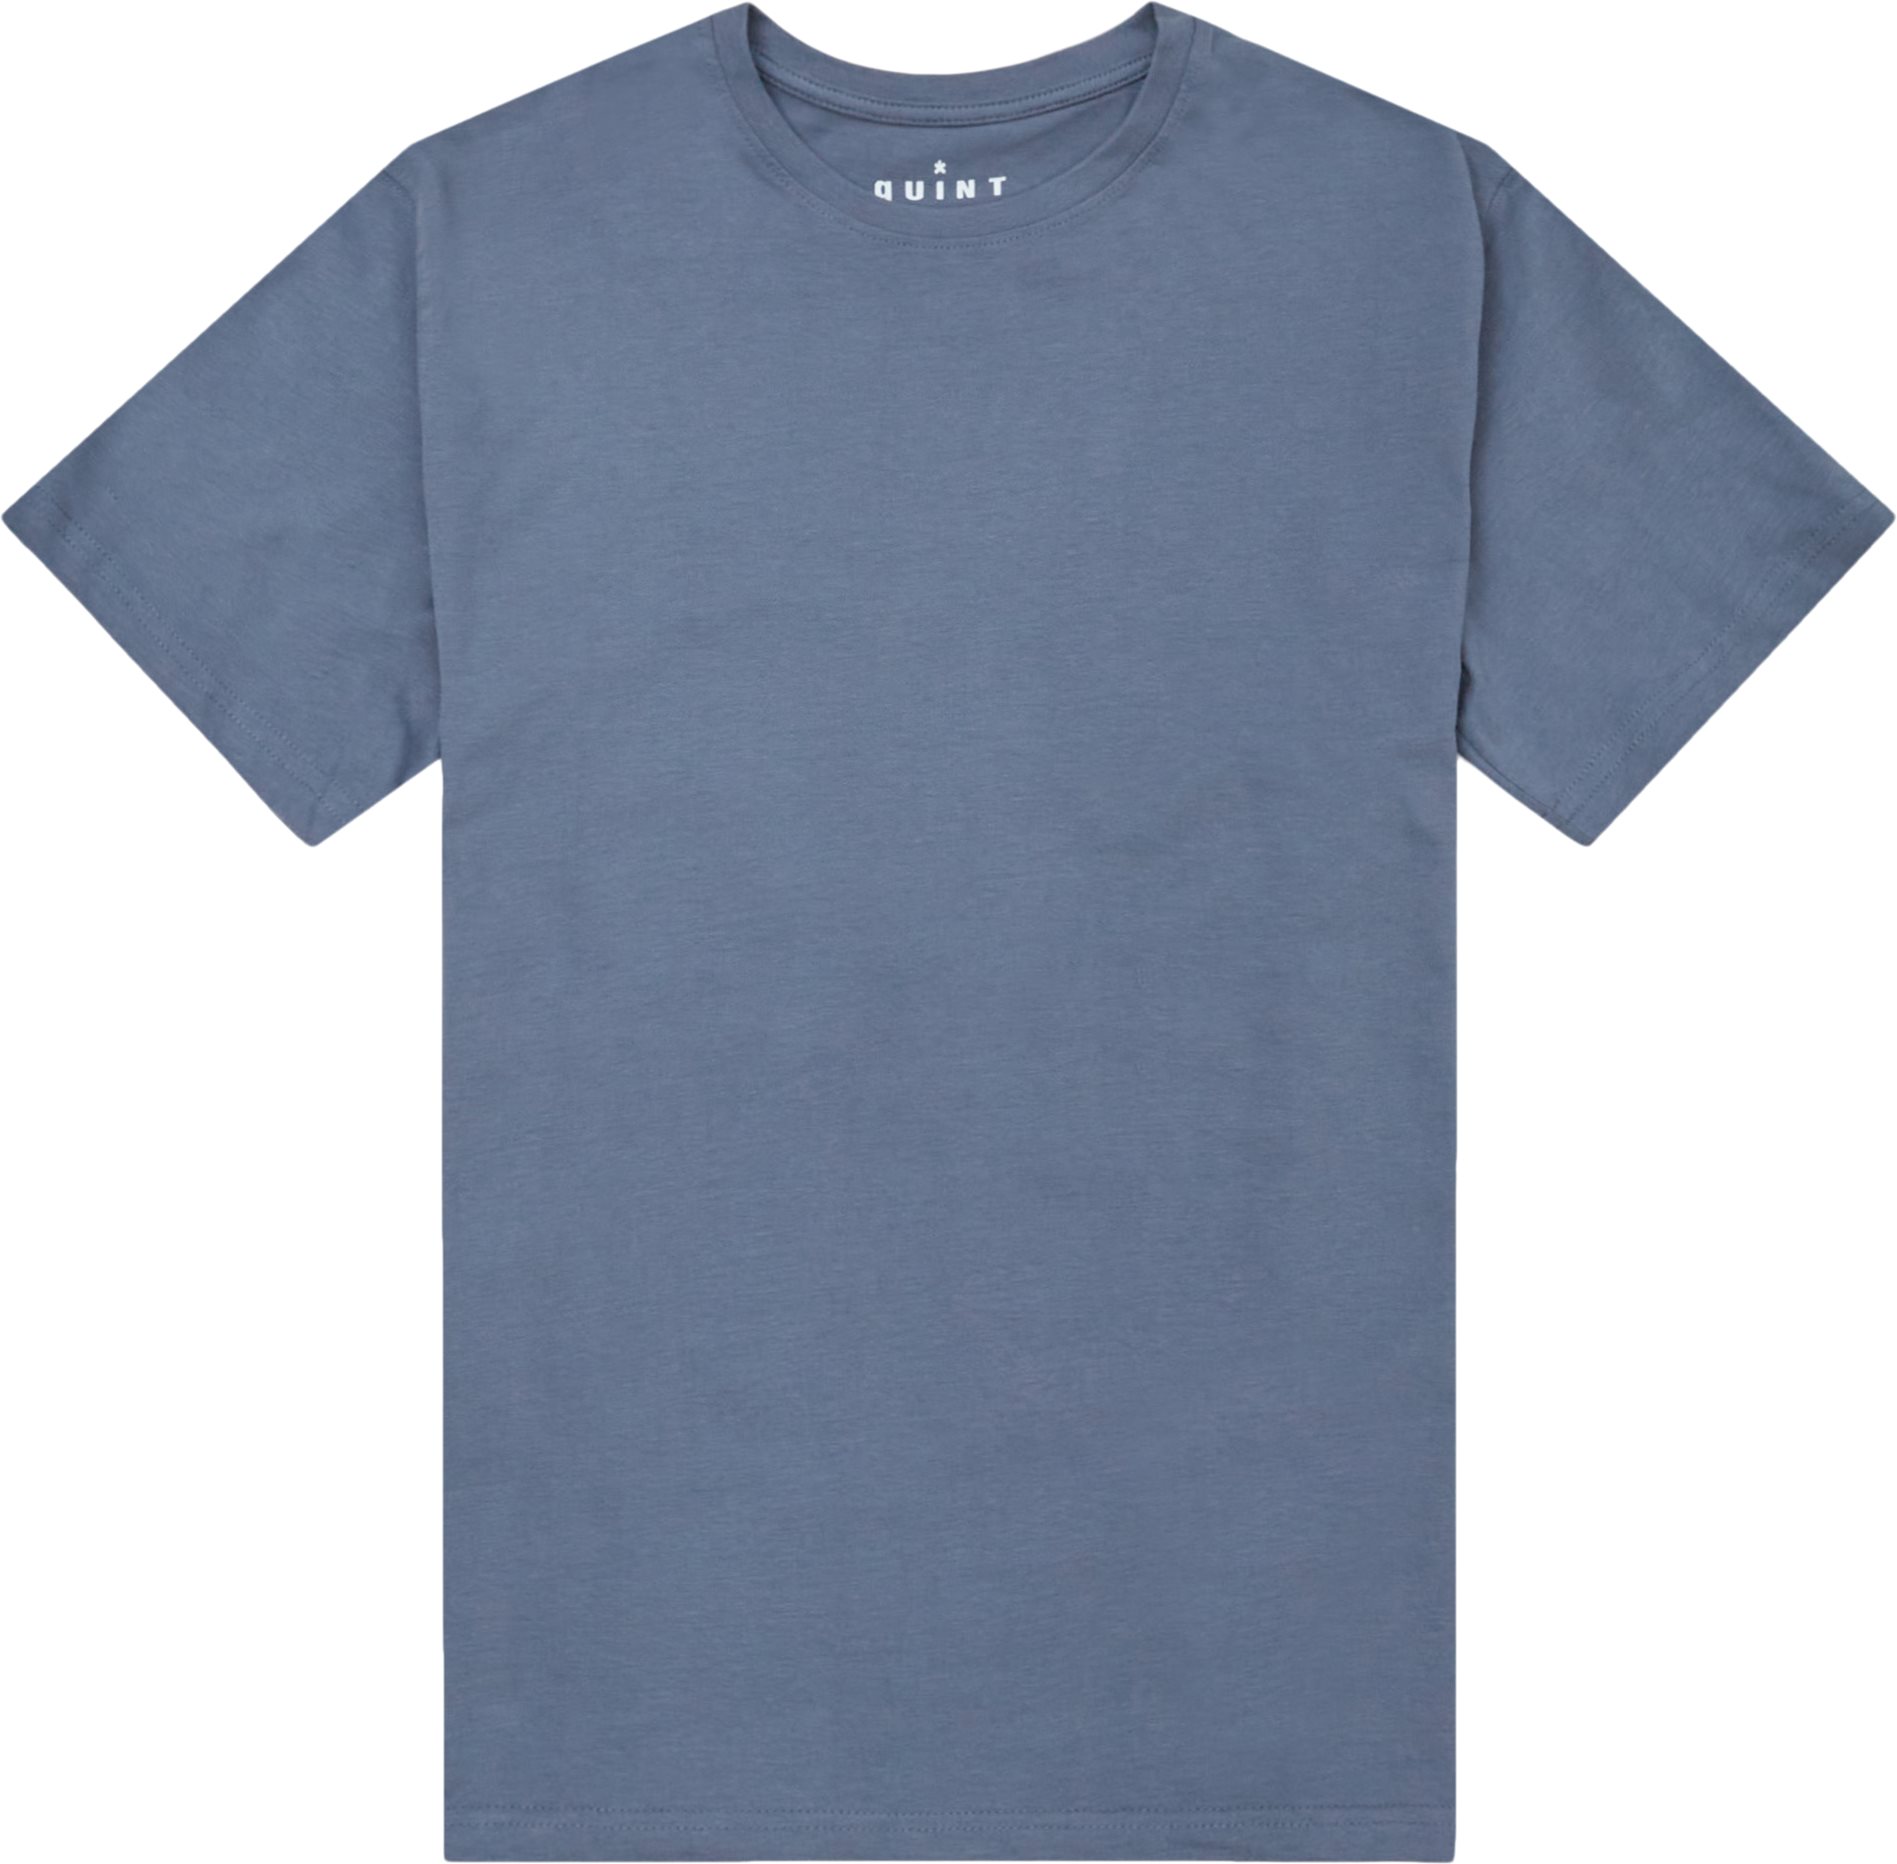 Brandon T -shirt med rund hals - T-shirts - Regular fit - Blå